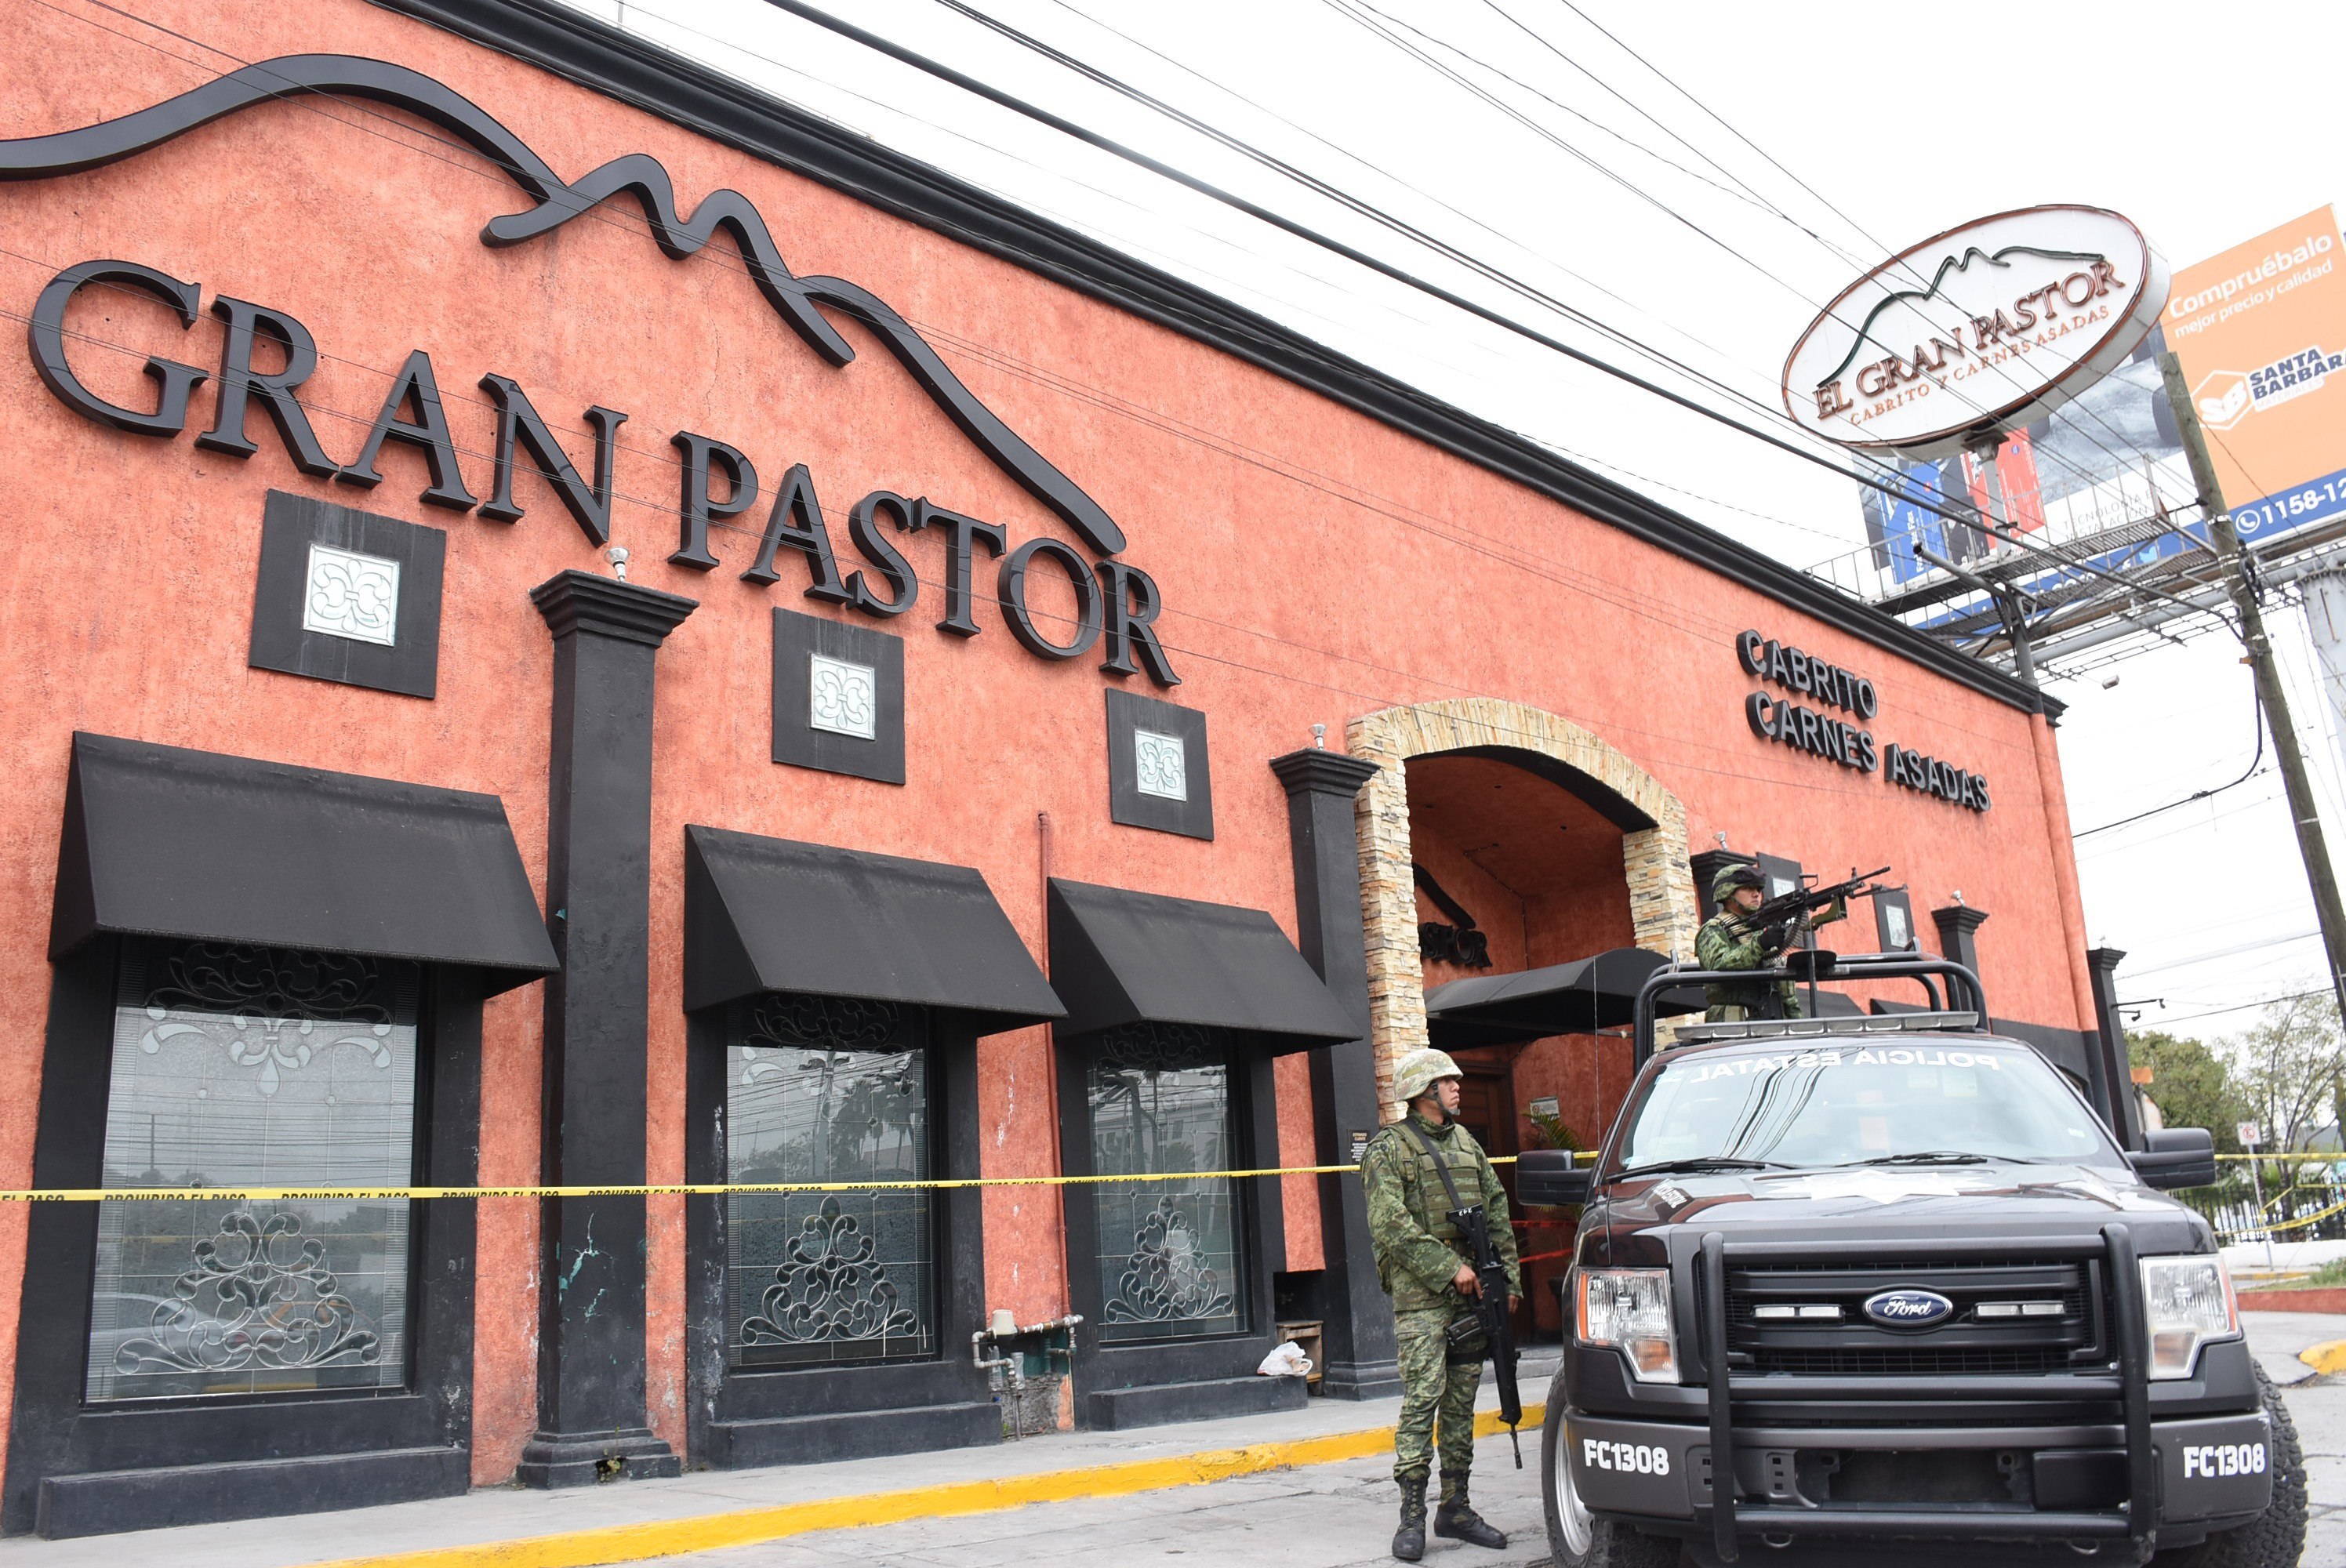  Encapuchados incendian El Gran Pastor, conocido restaurante en Monterrey